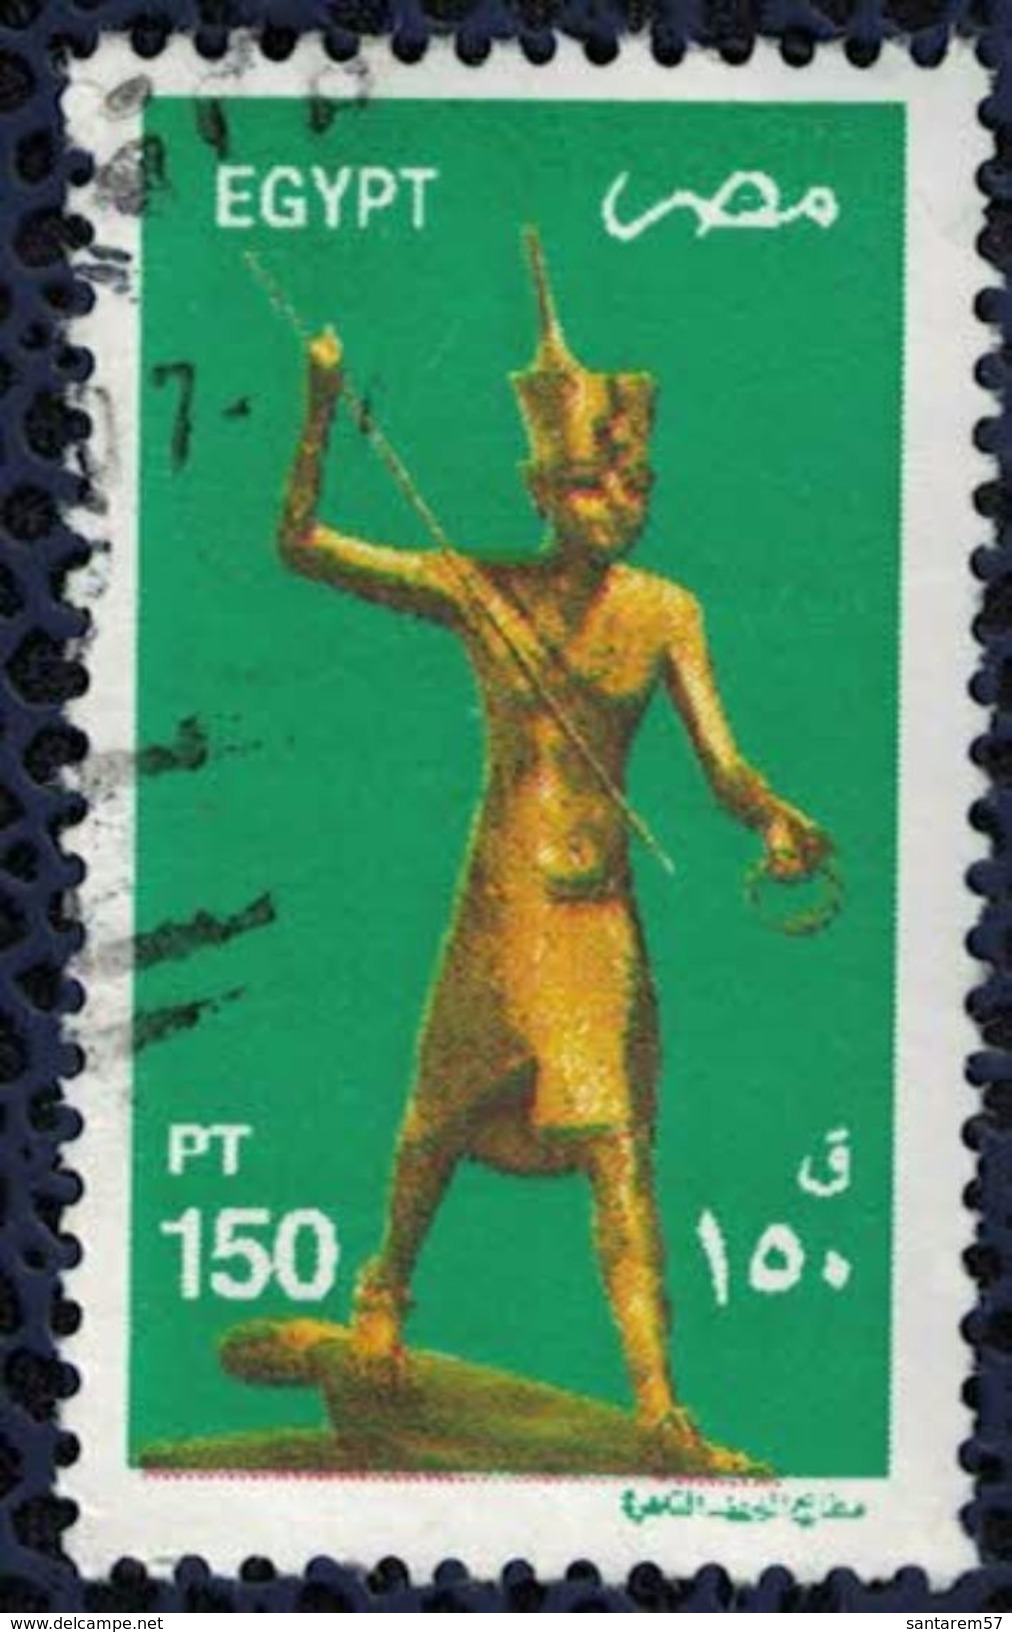 Egypte 2002 Oblitéré Used Figurine En Bois Doré De Toutankhamon - Used Stamps